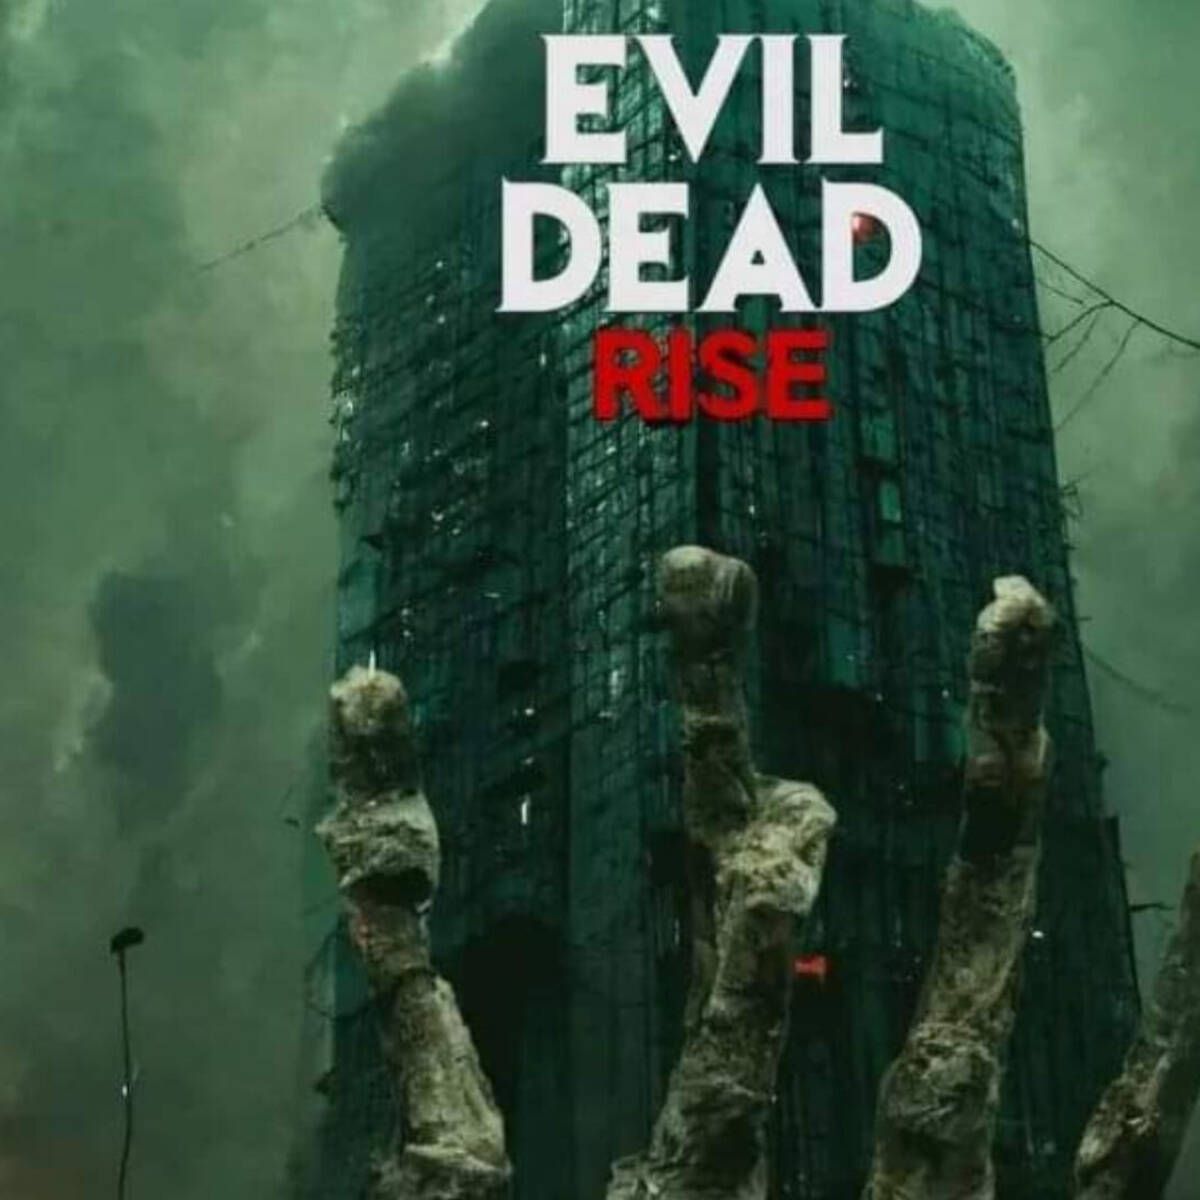 Evil Dead Rise publica una nueva imagen y es escalofriante - Vandal Random